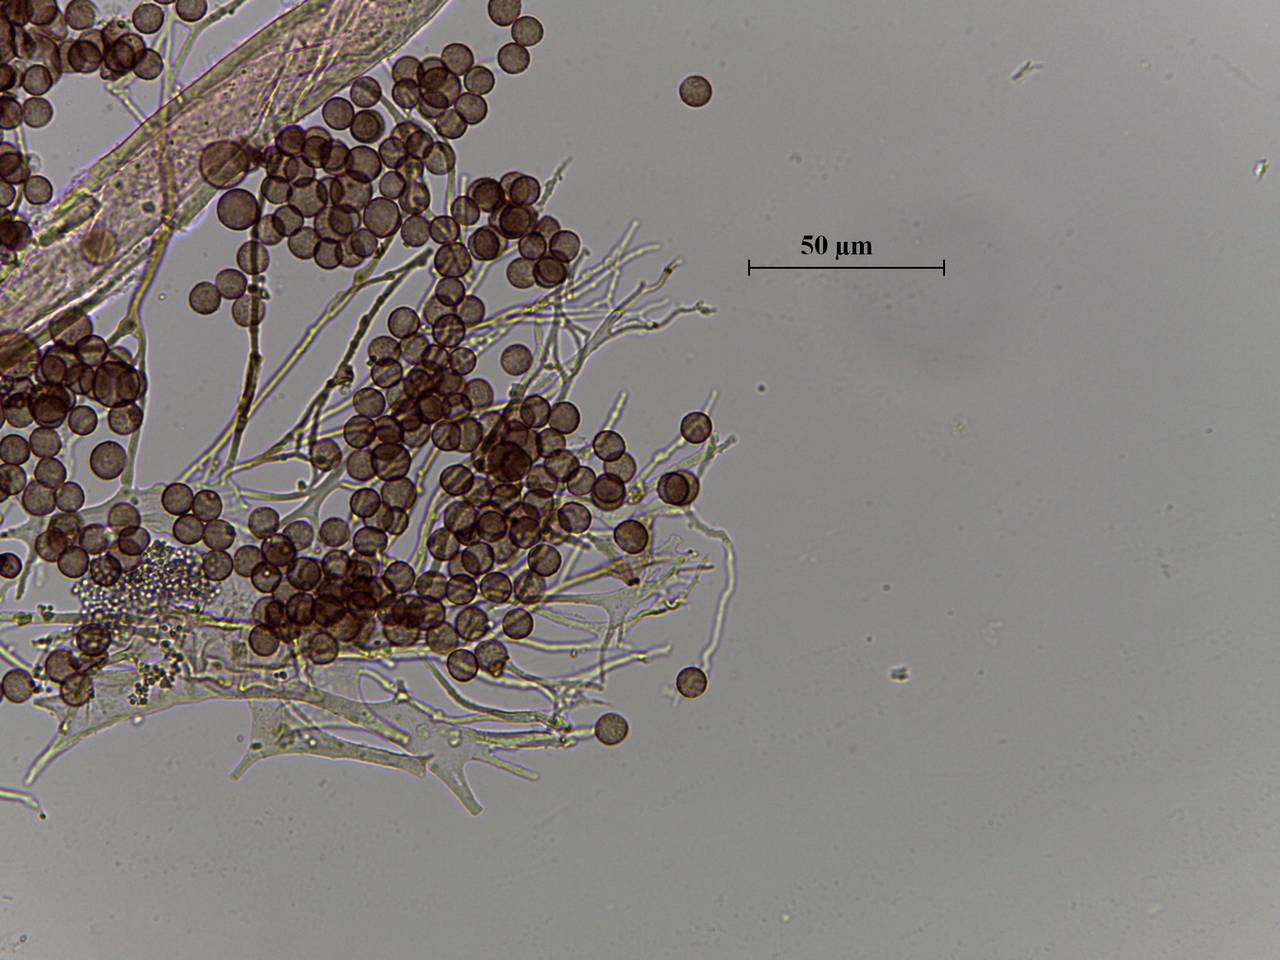 Diderma chondrioderma споры в проходящем свете × 1000, Калининский, Тверская область (Россия)